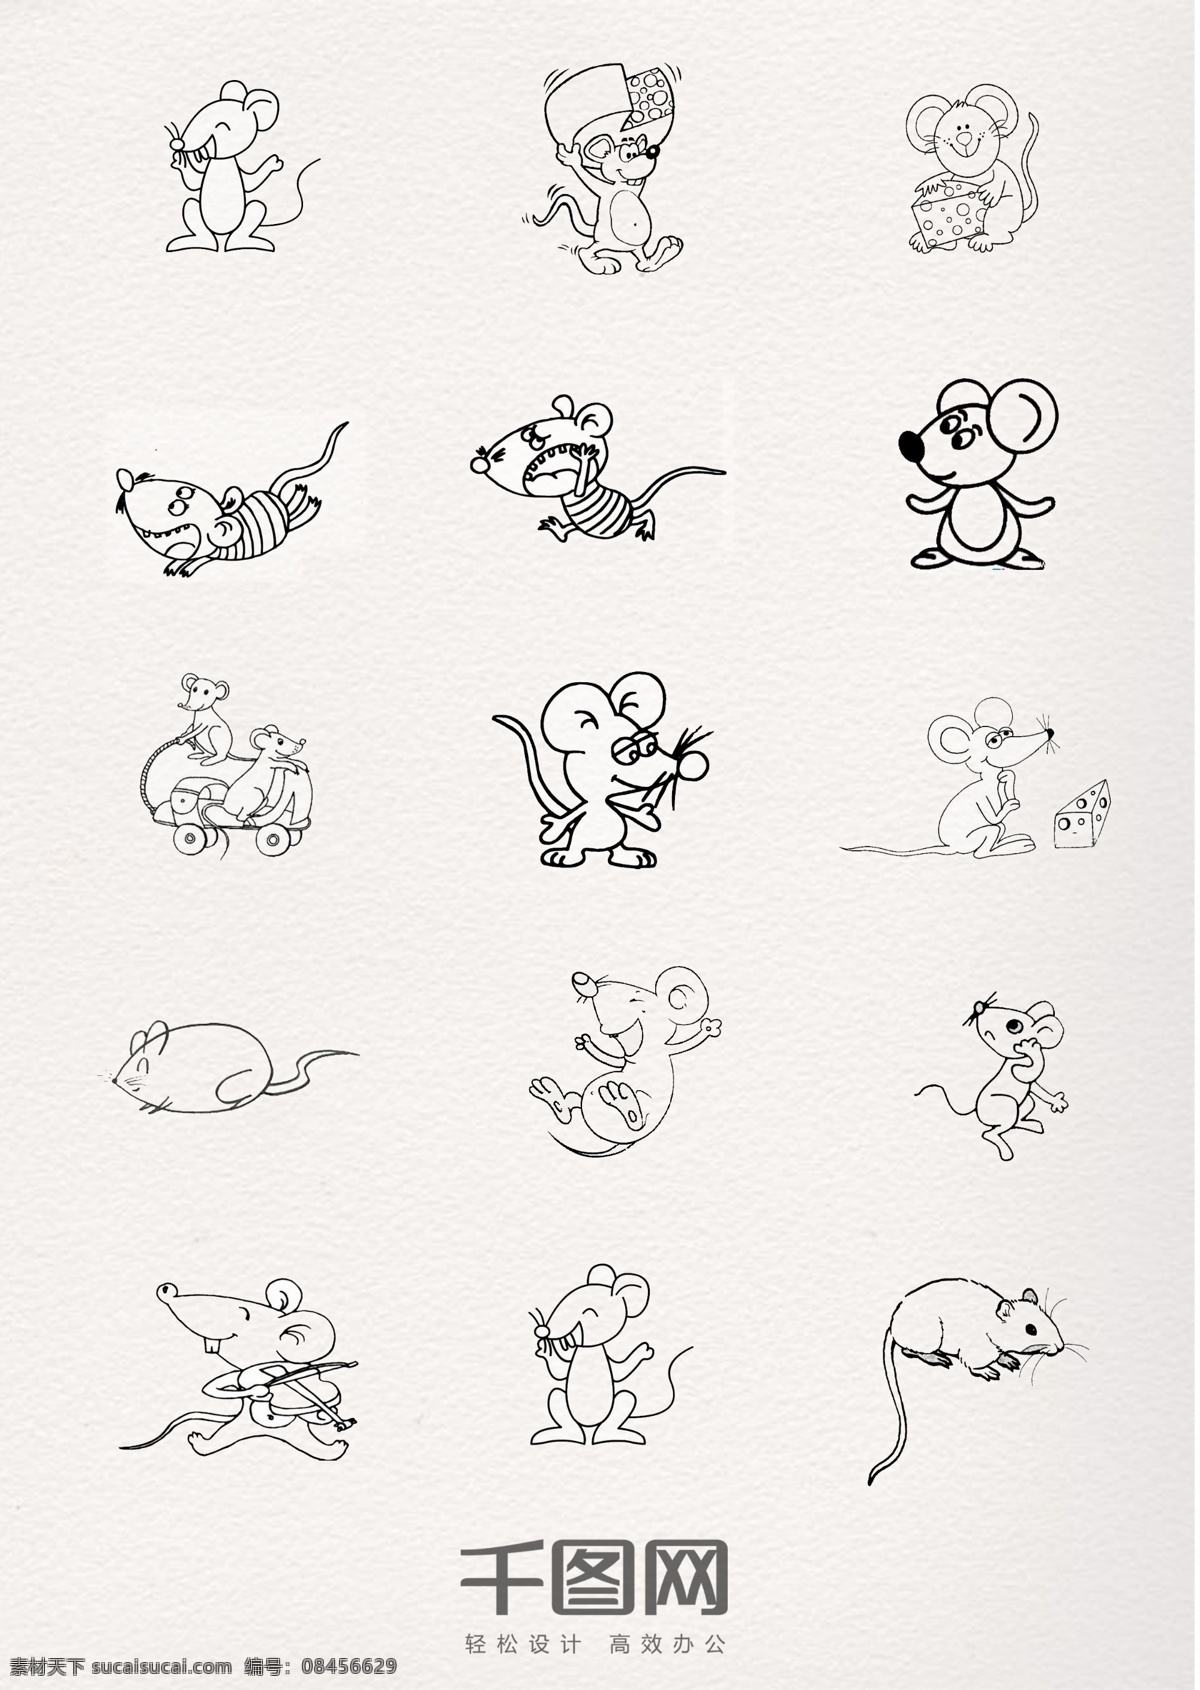 老鼠 线条 动物 简 笔画 卡通 可爱 简笔画 铅笔 钢笔